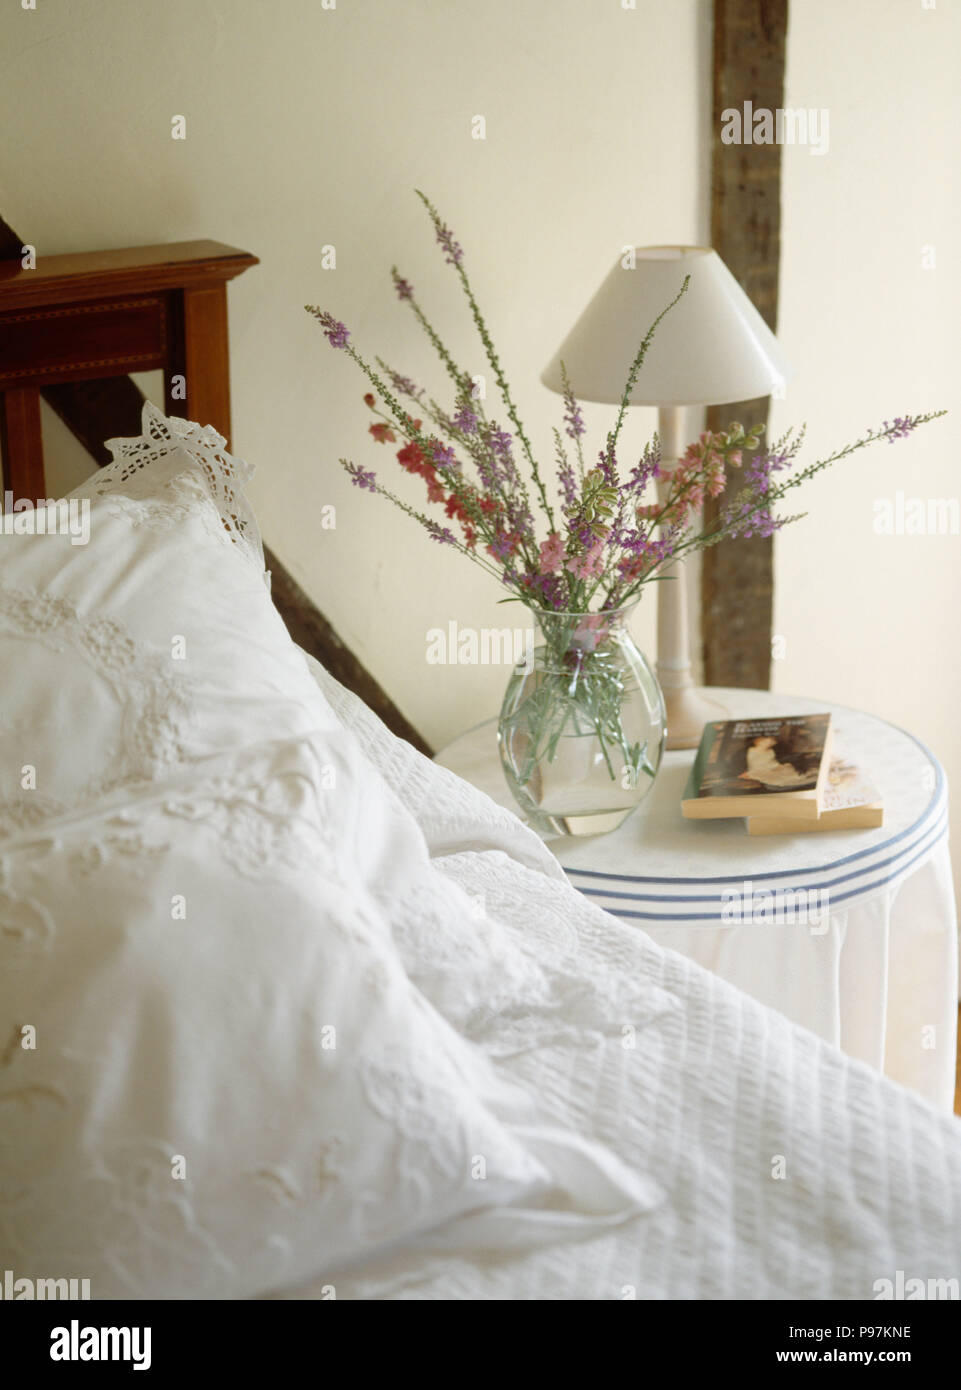 Lampada bianca e fiori freschi in vaso di vetro sul comodino accanto al letto con il bianco broderie anglaise cuscini Foto Stock